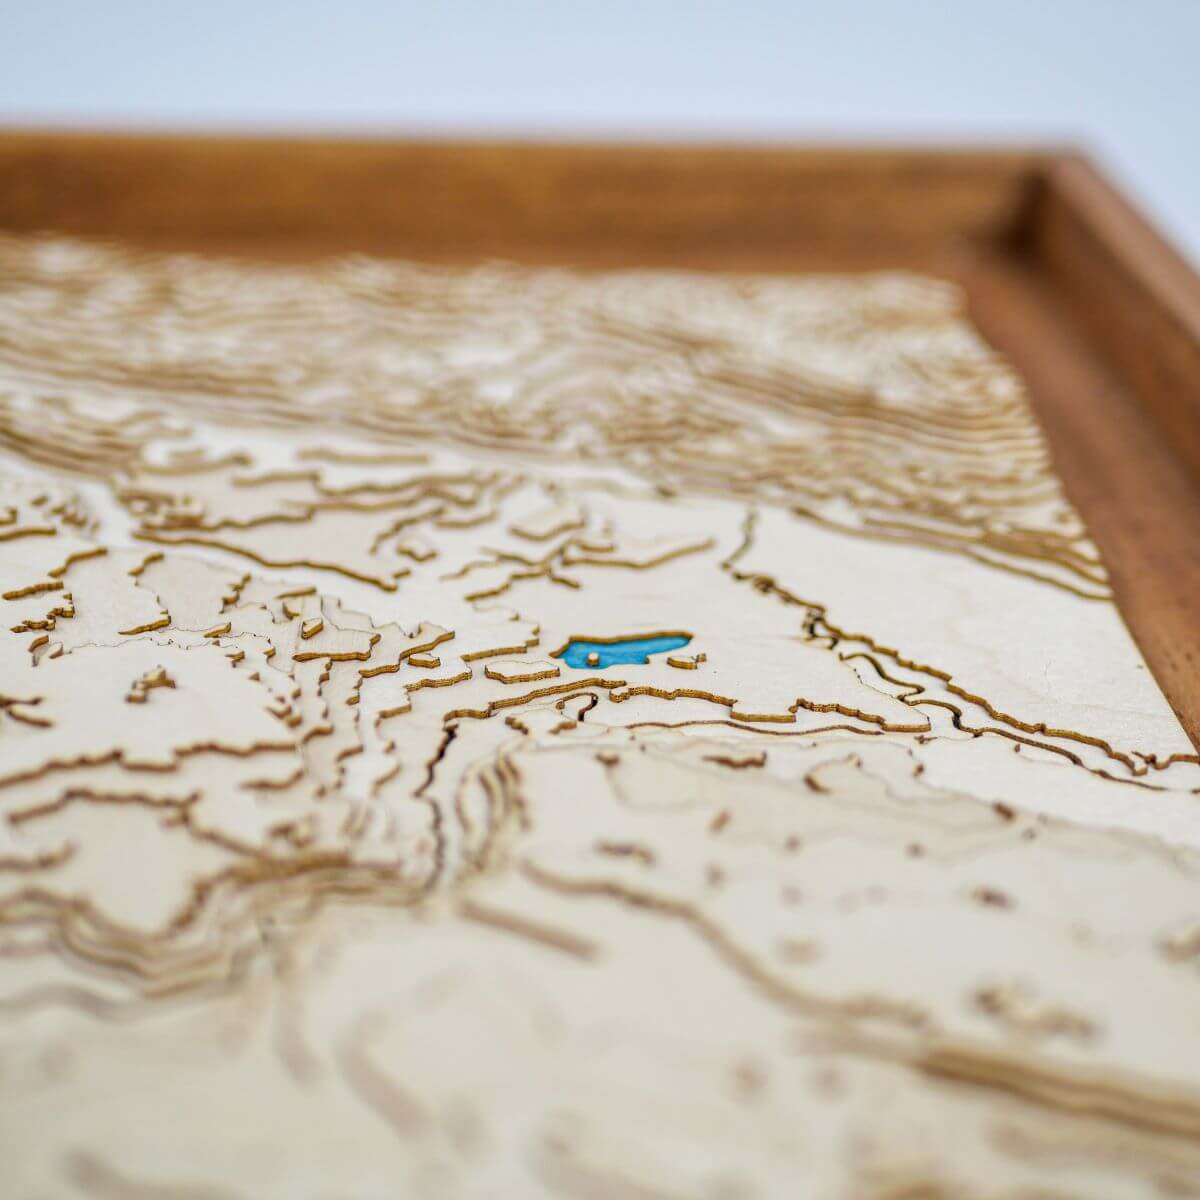 Notre carte topographique en bois recrée en détails le relief des Alpes Juliennes jusqu'à l'île du lac de Bled